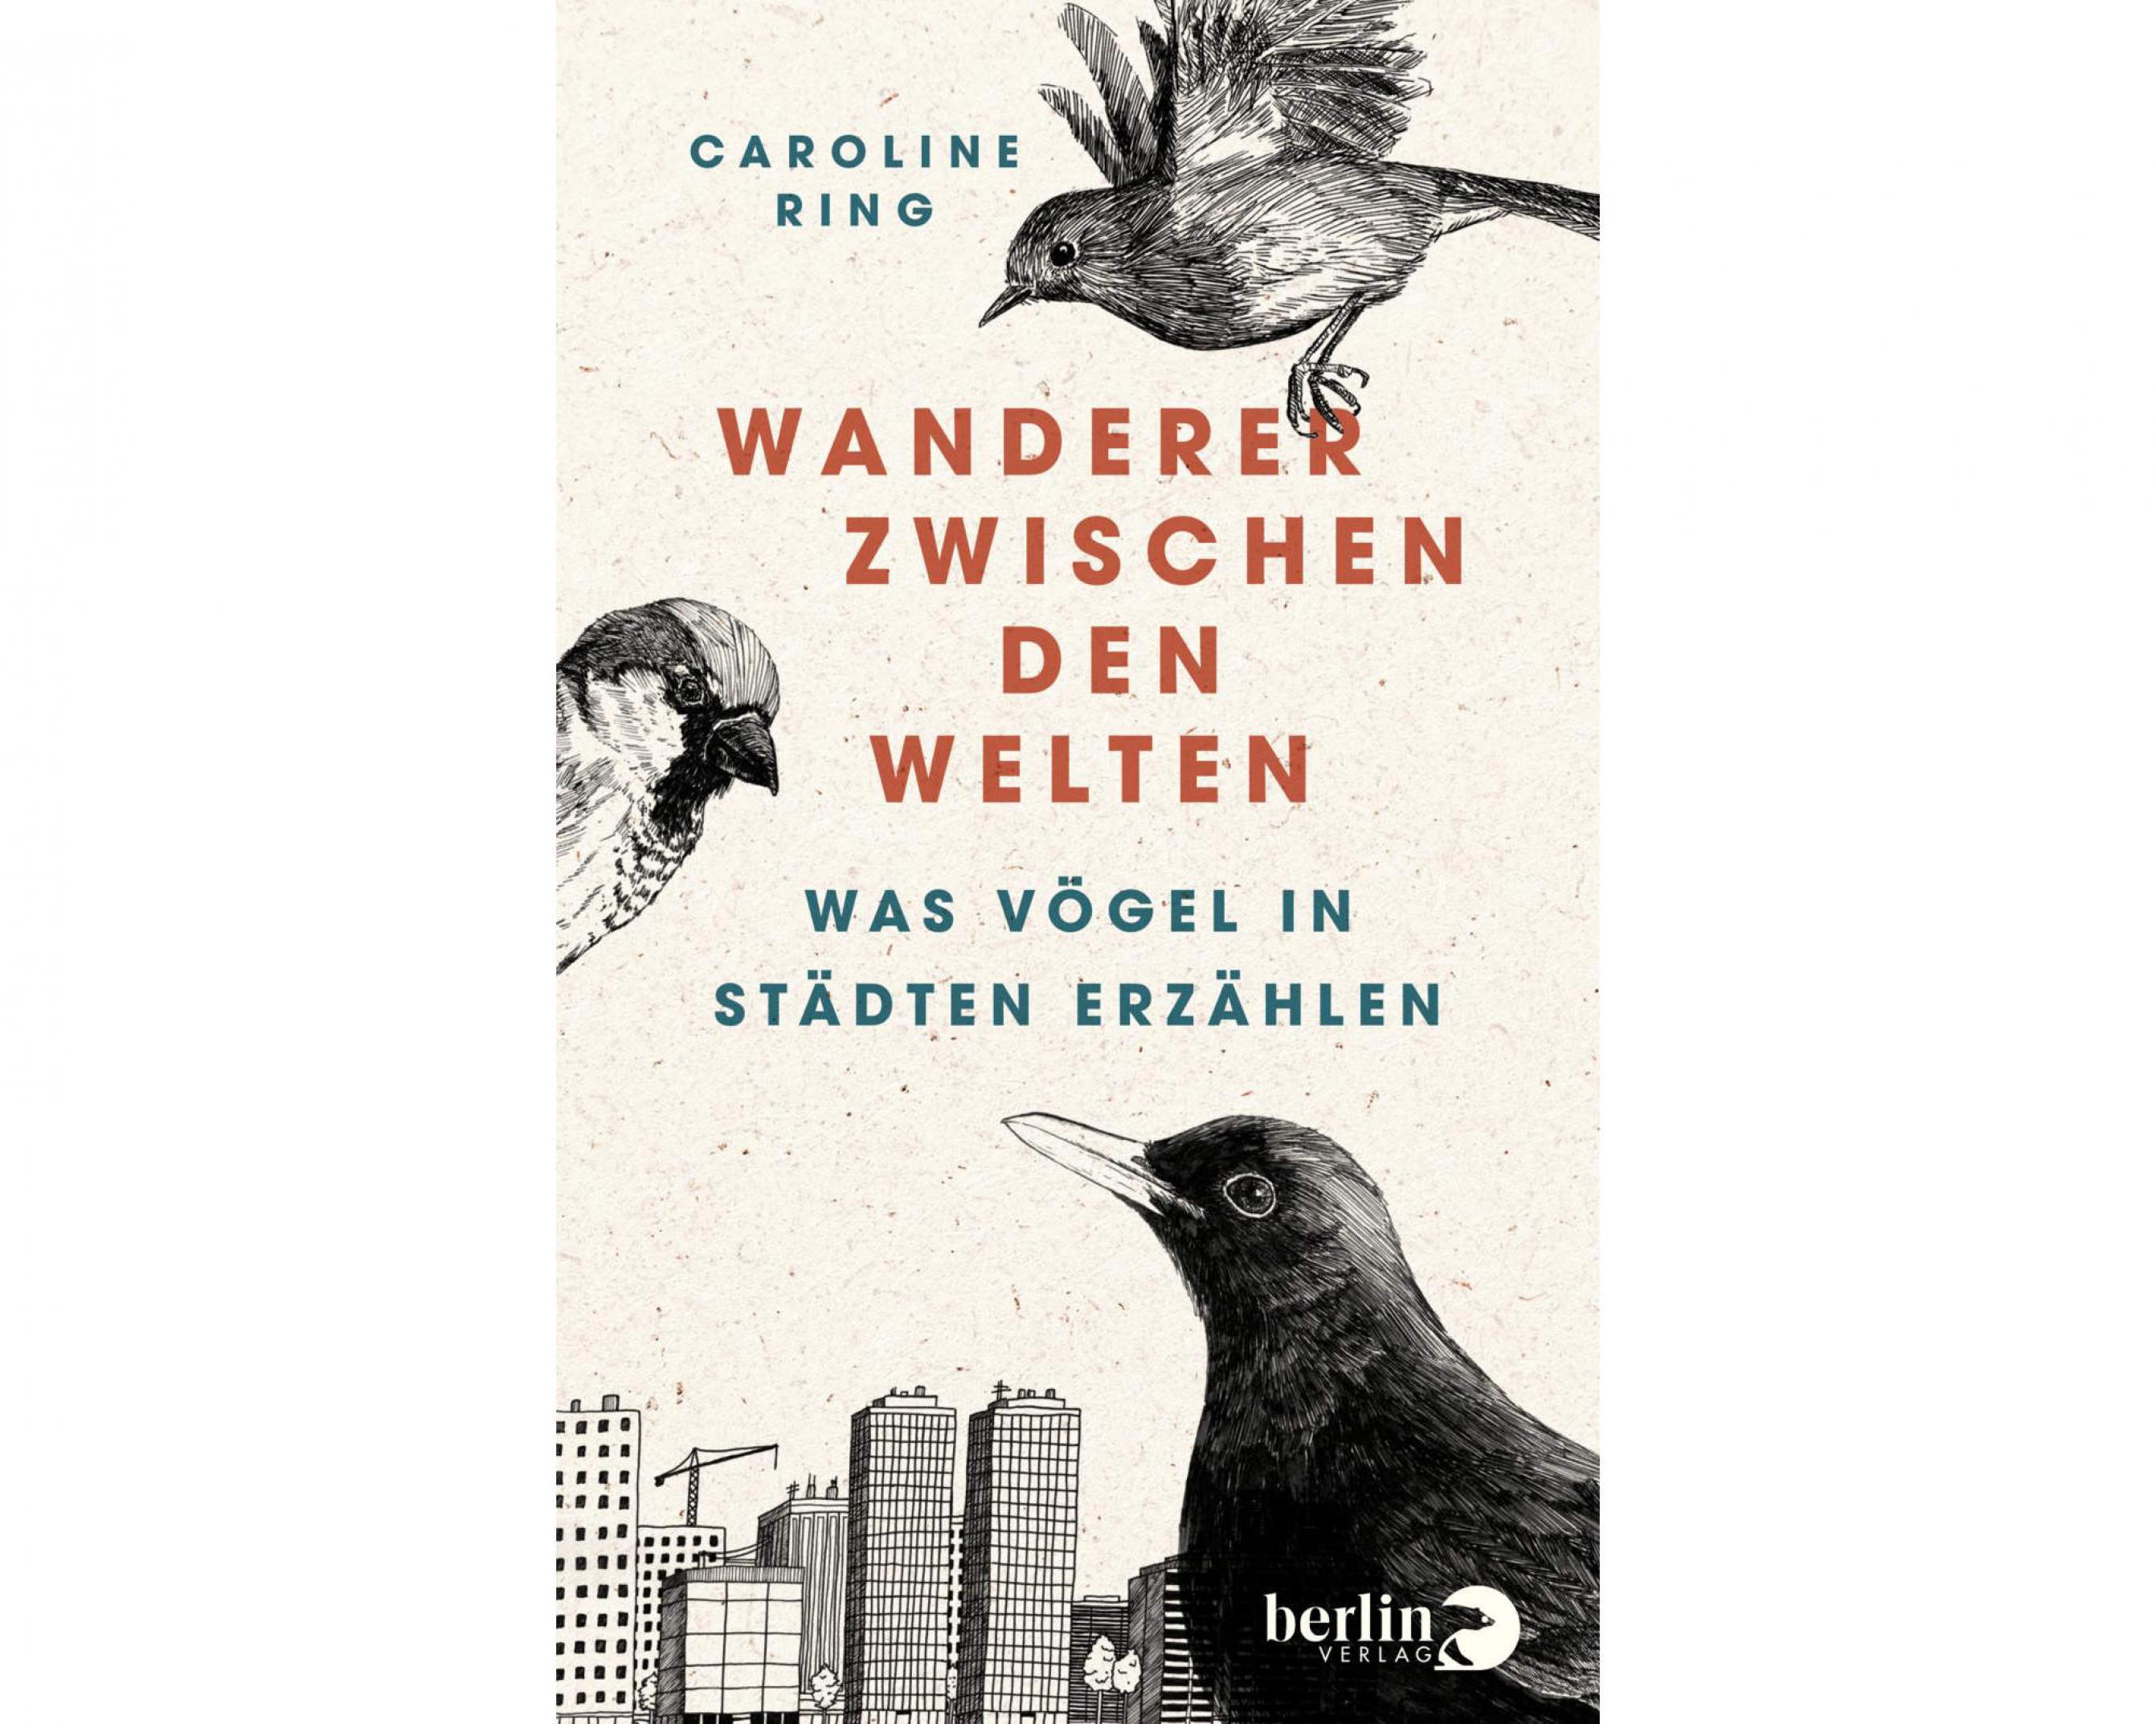 Titelbild des Buchs „Wanderer zwischen den Welten“. Über einer gezeichneten Stadt Skyline sind verschiedene Stadtvögel zu sehen.